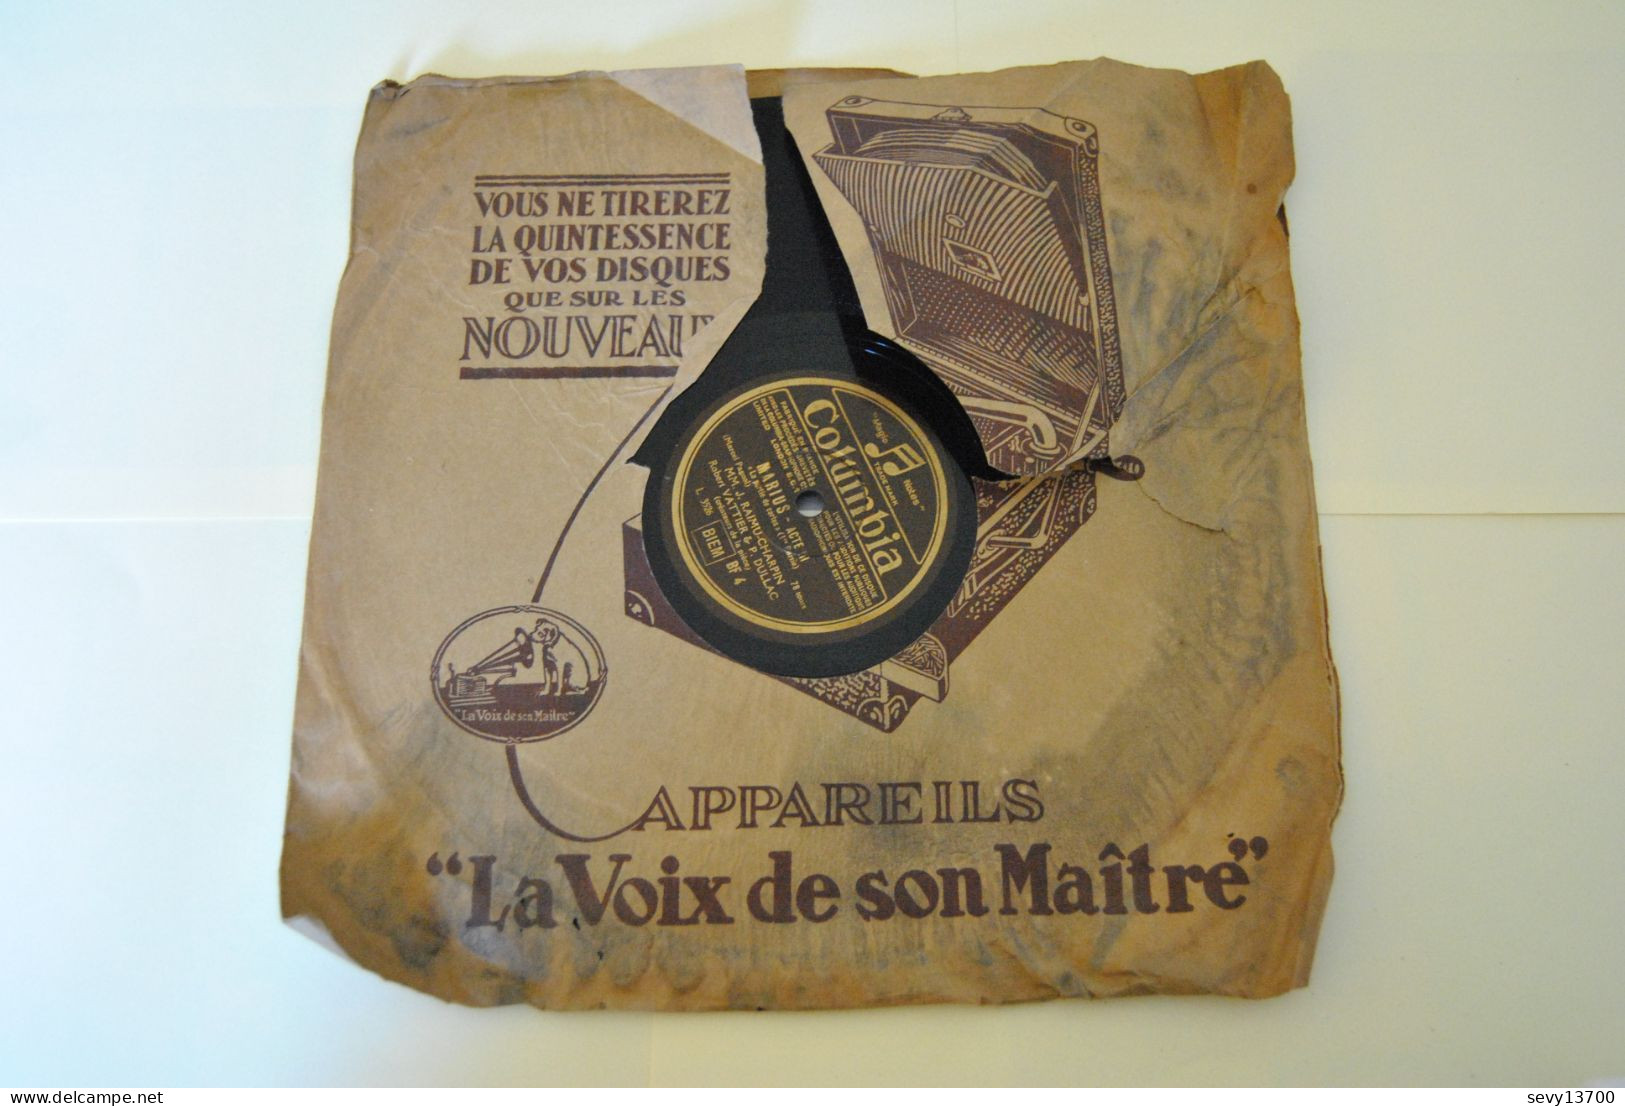 Raimu - Marius La Partie De Carte Partie 1 Et 2 - Disques Columbia 78 Tours - 78 Rpm - Gramophone Records